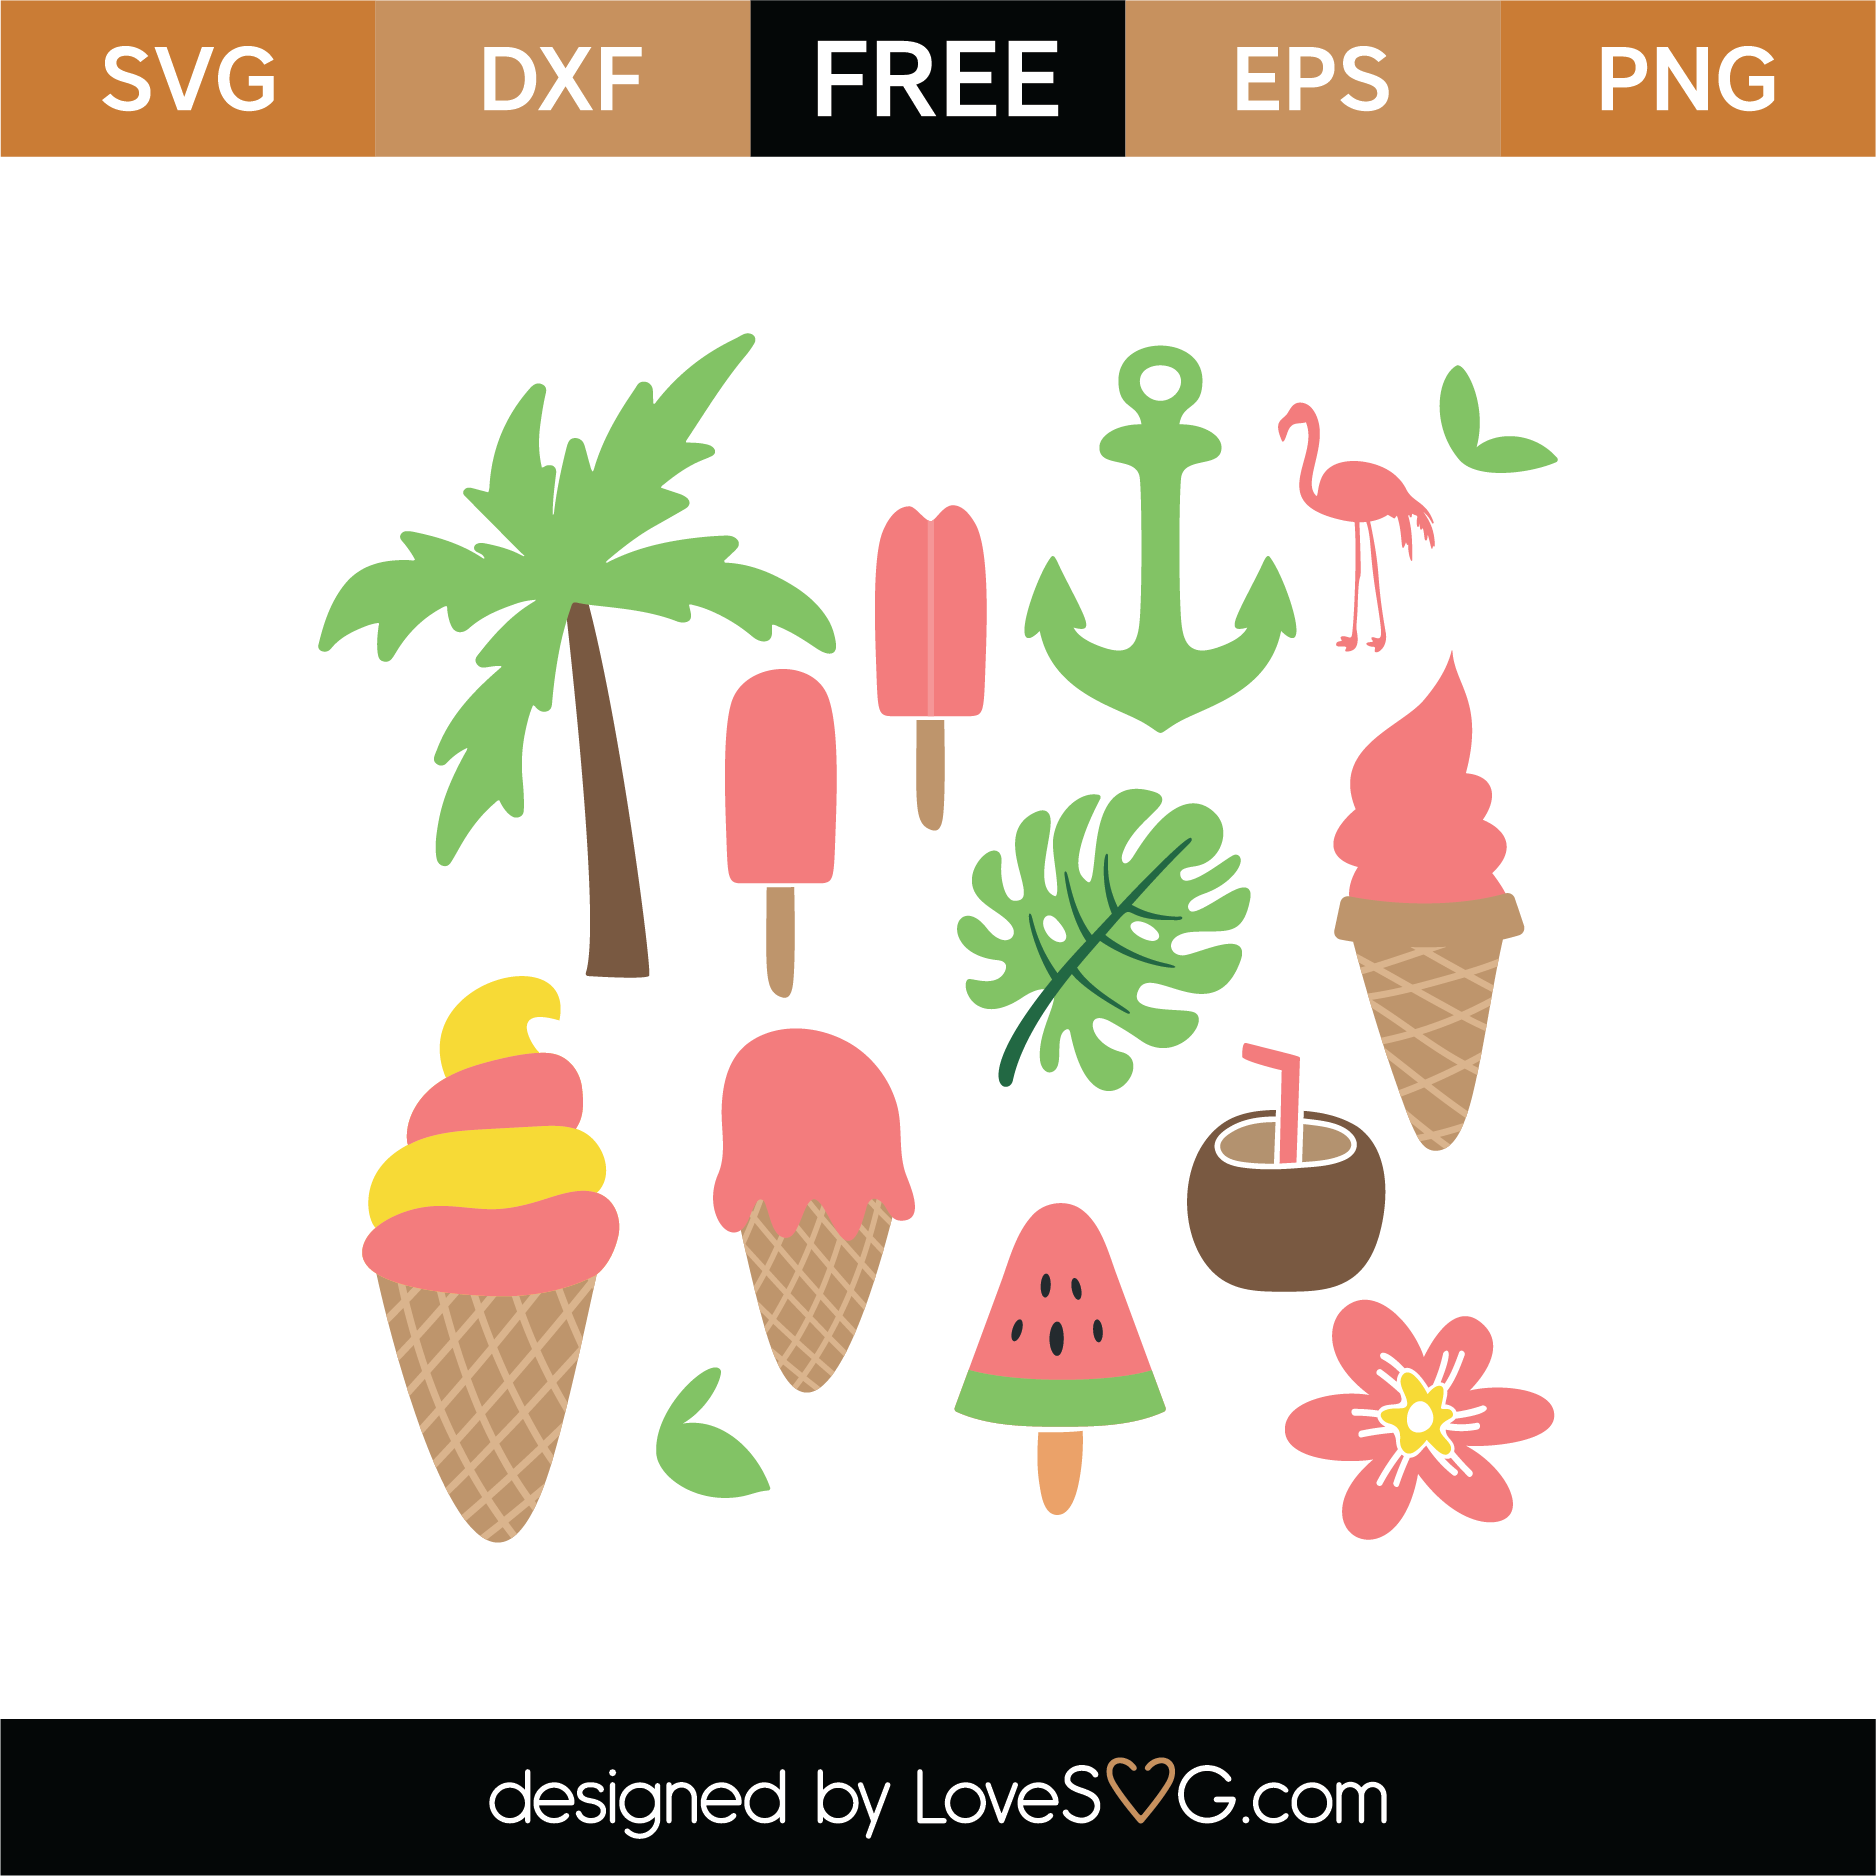 Download Free Summer Elements SVG Cut File | Lovesvg.com